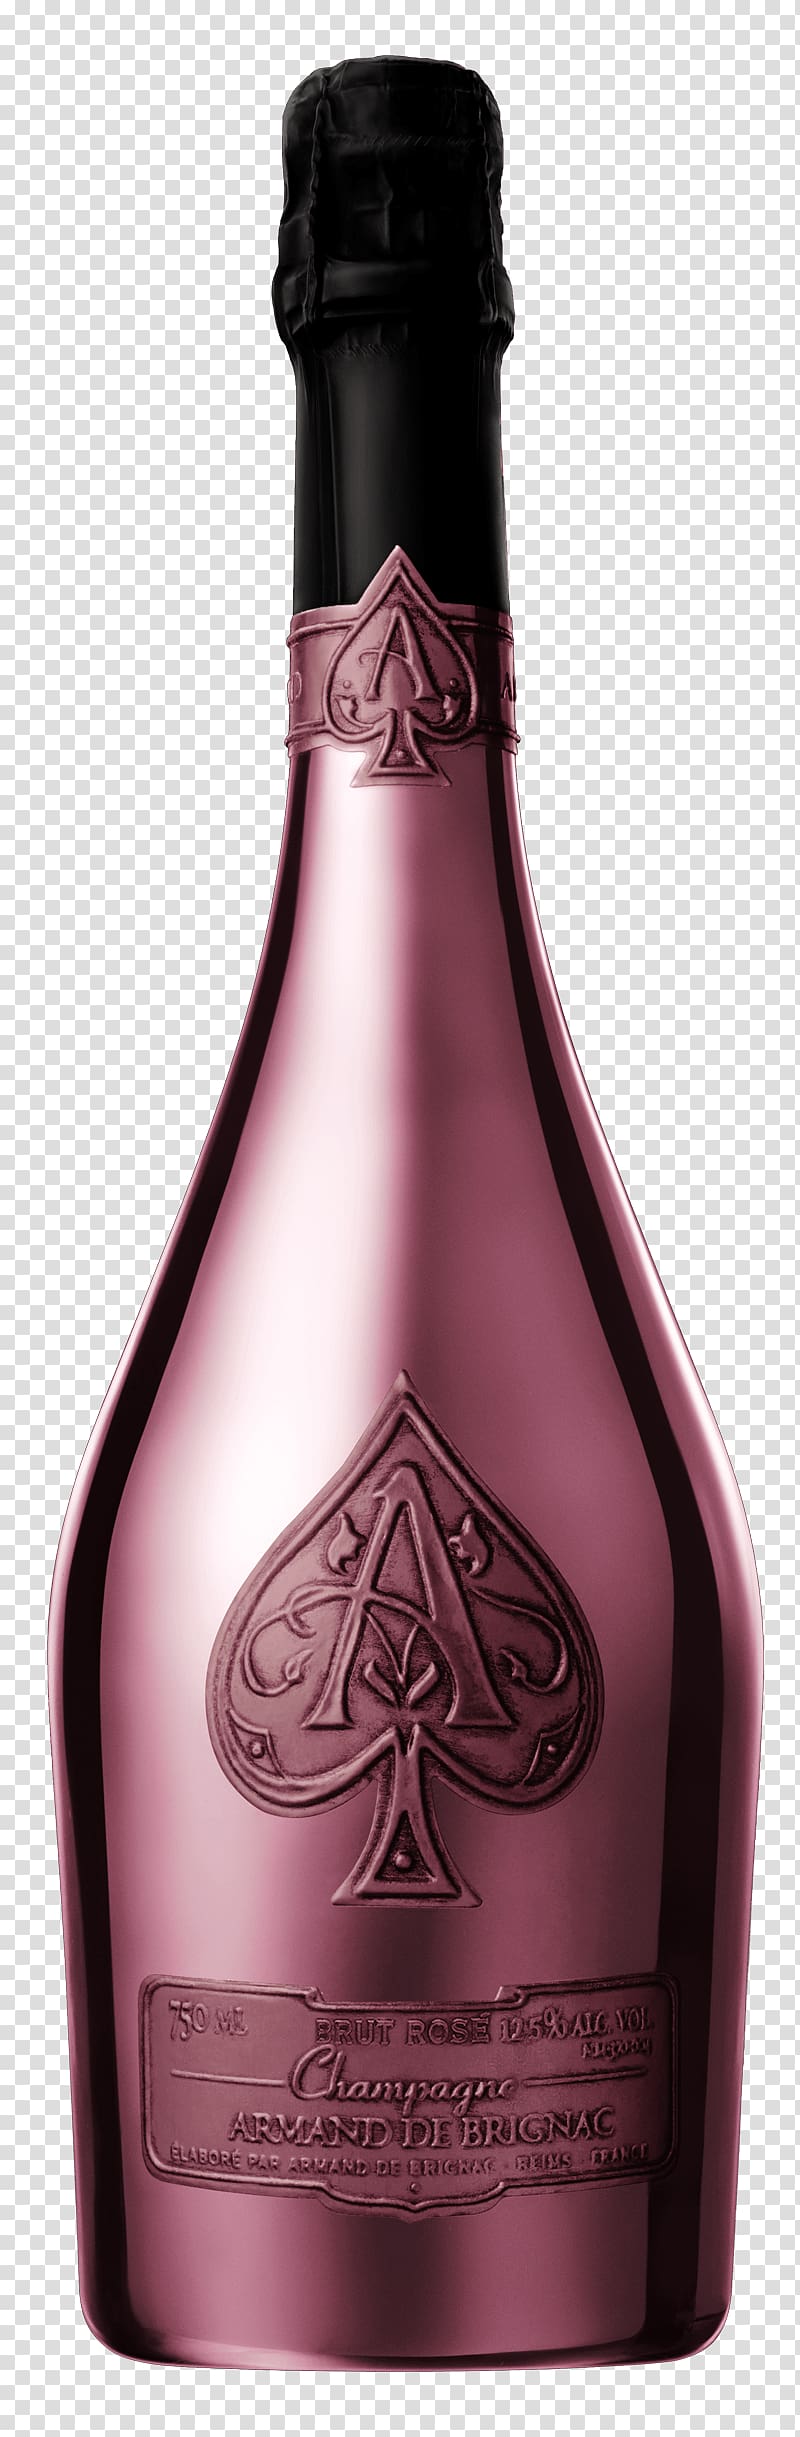 Champagne Pinot noir Montagne de Reims Rosé Wine, champagne transparent background PNG clipart